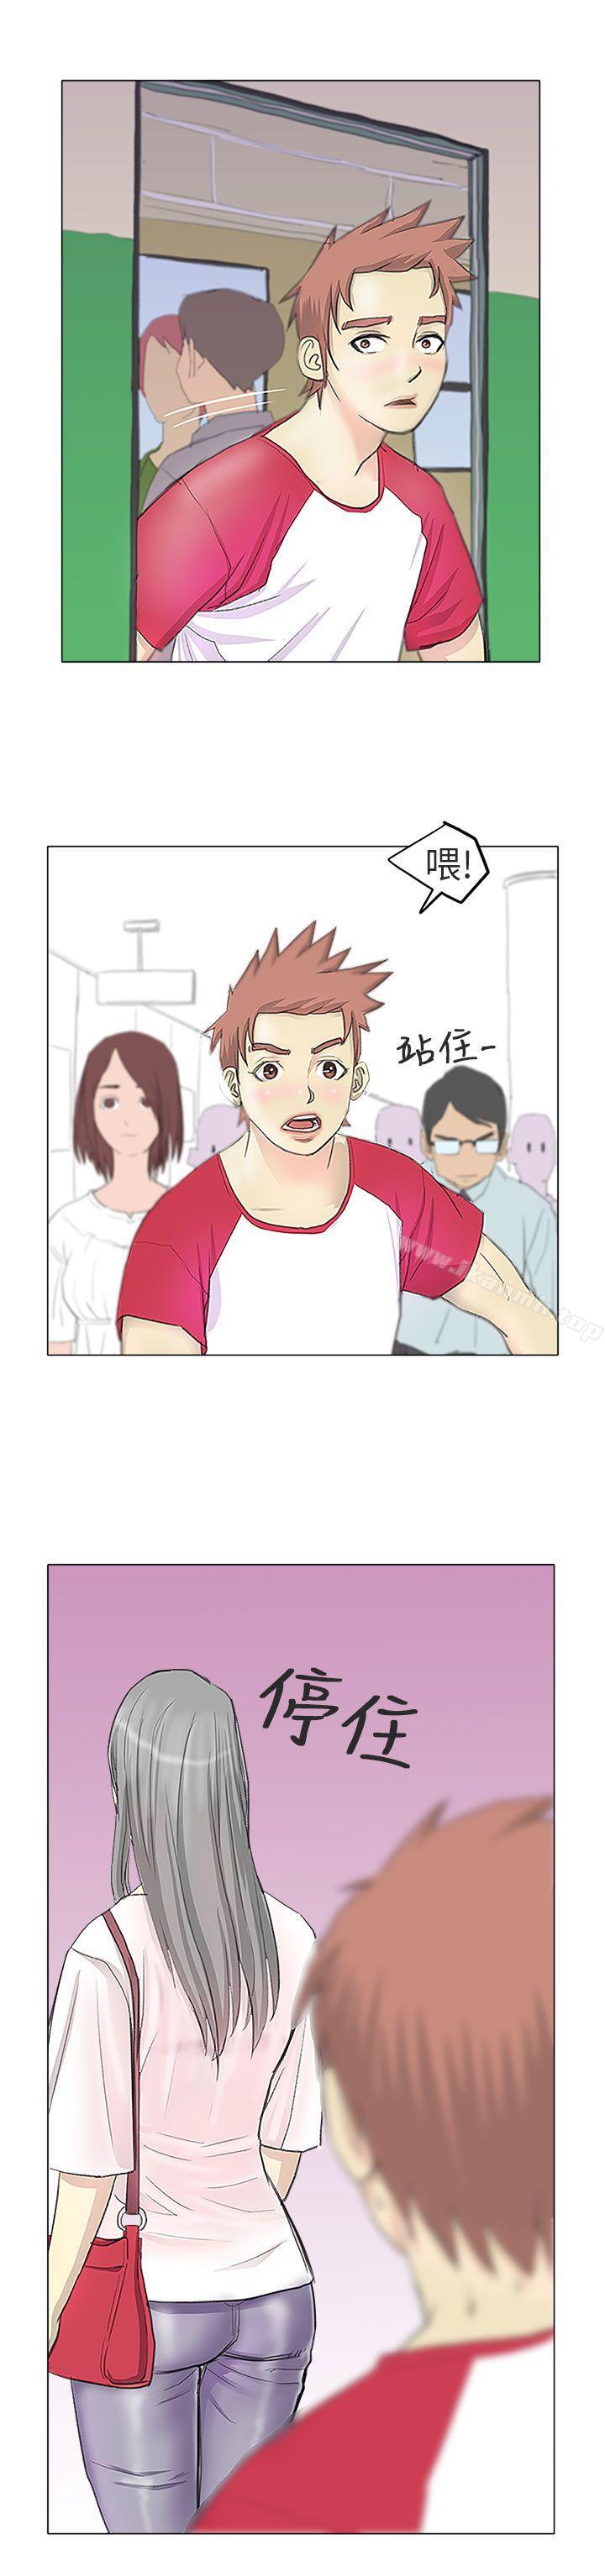 漫画韩国 秘密Story第二季   - 立即阅读 第二季 電車癡漢?(上)第22漫画图片